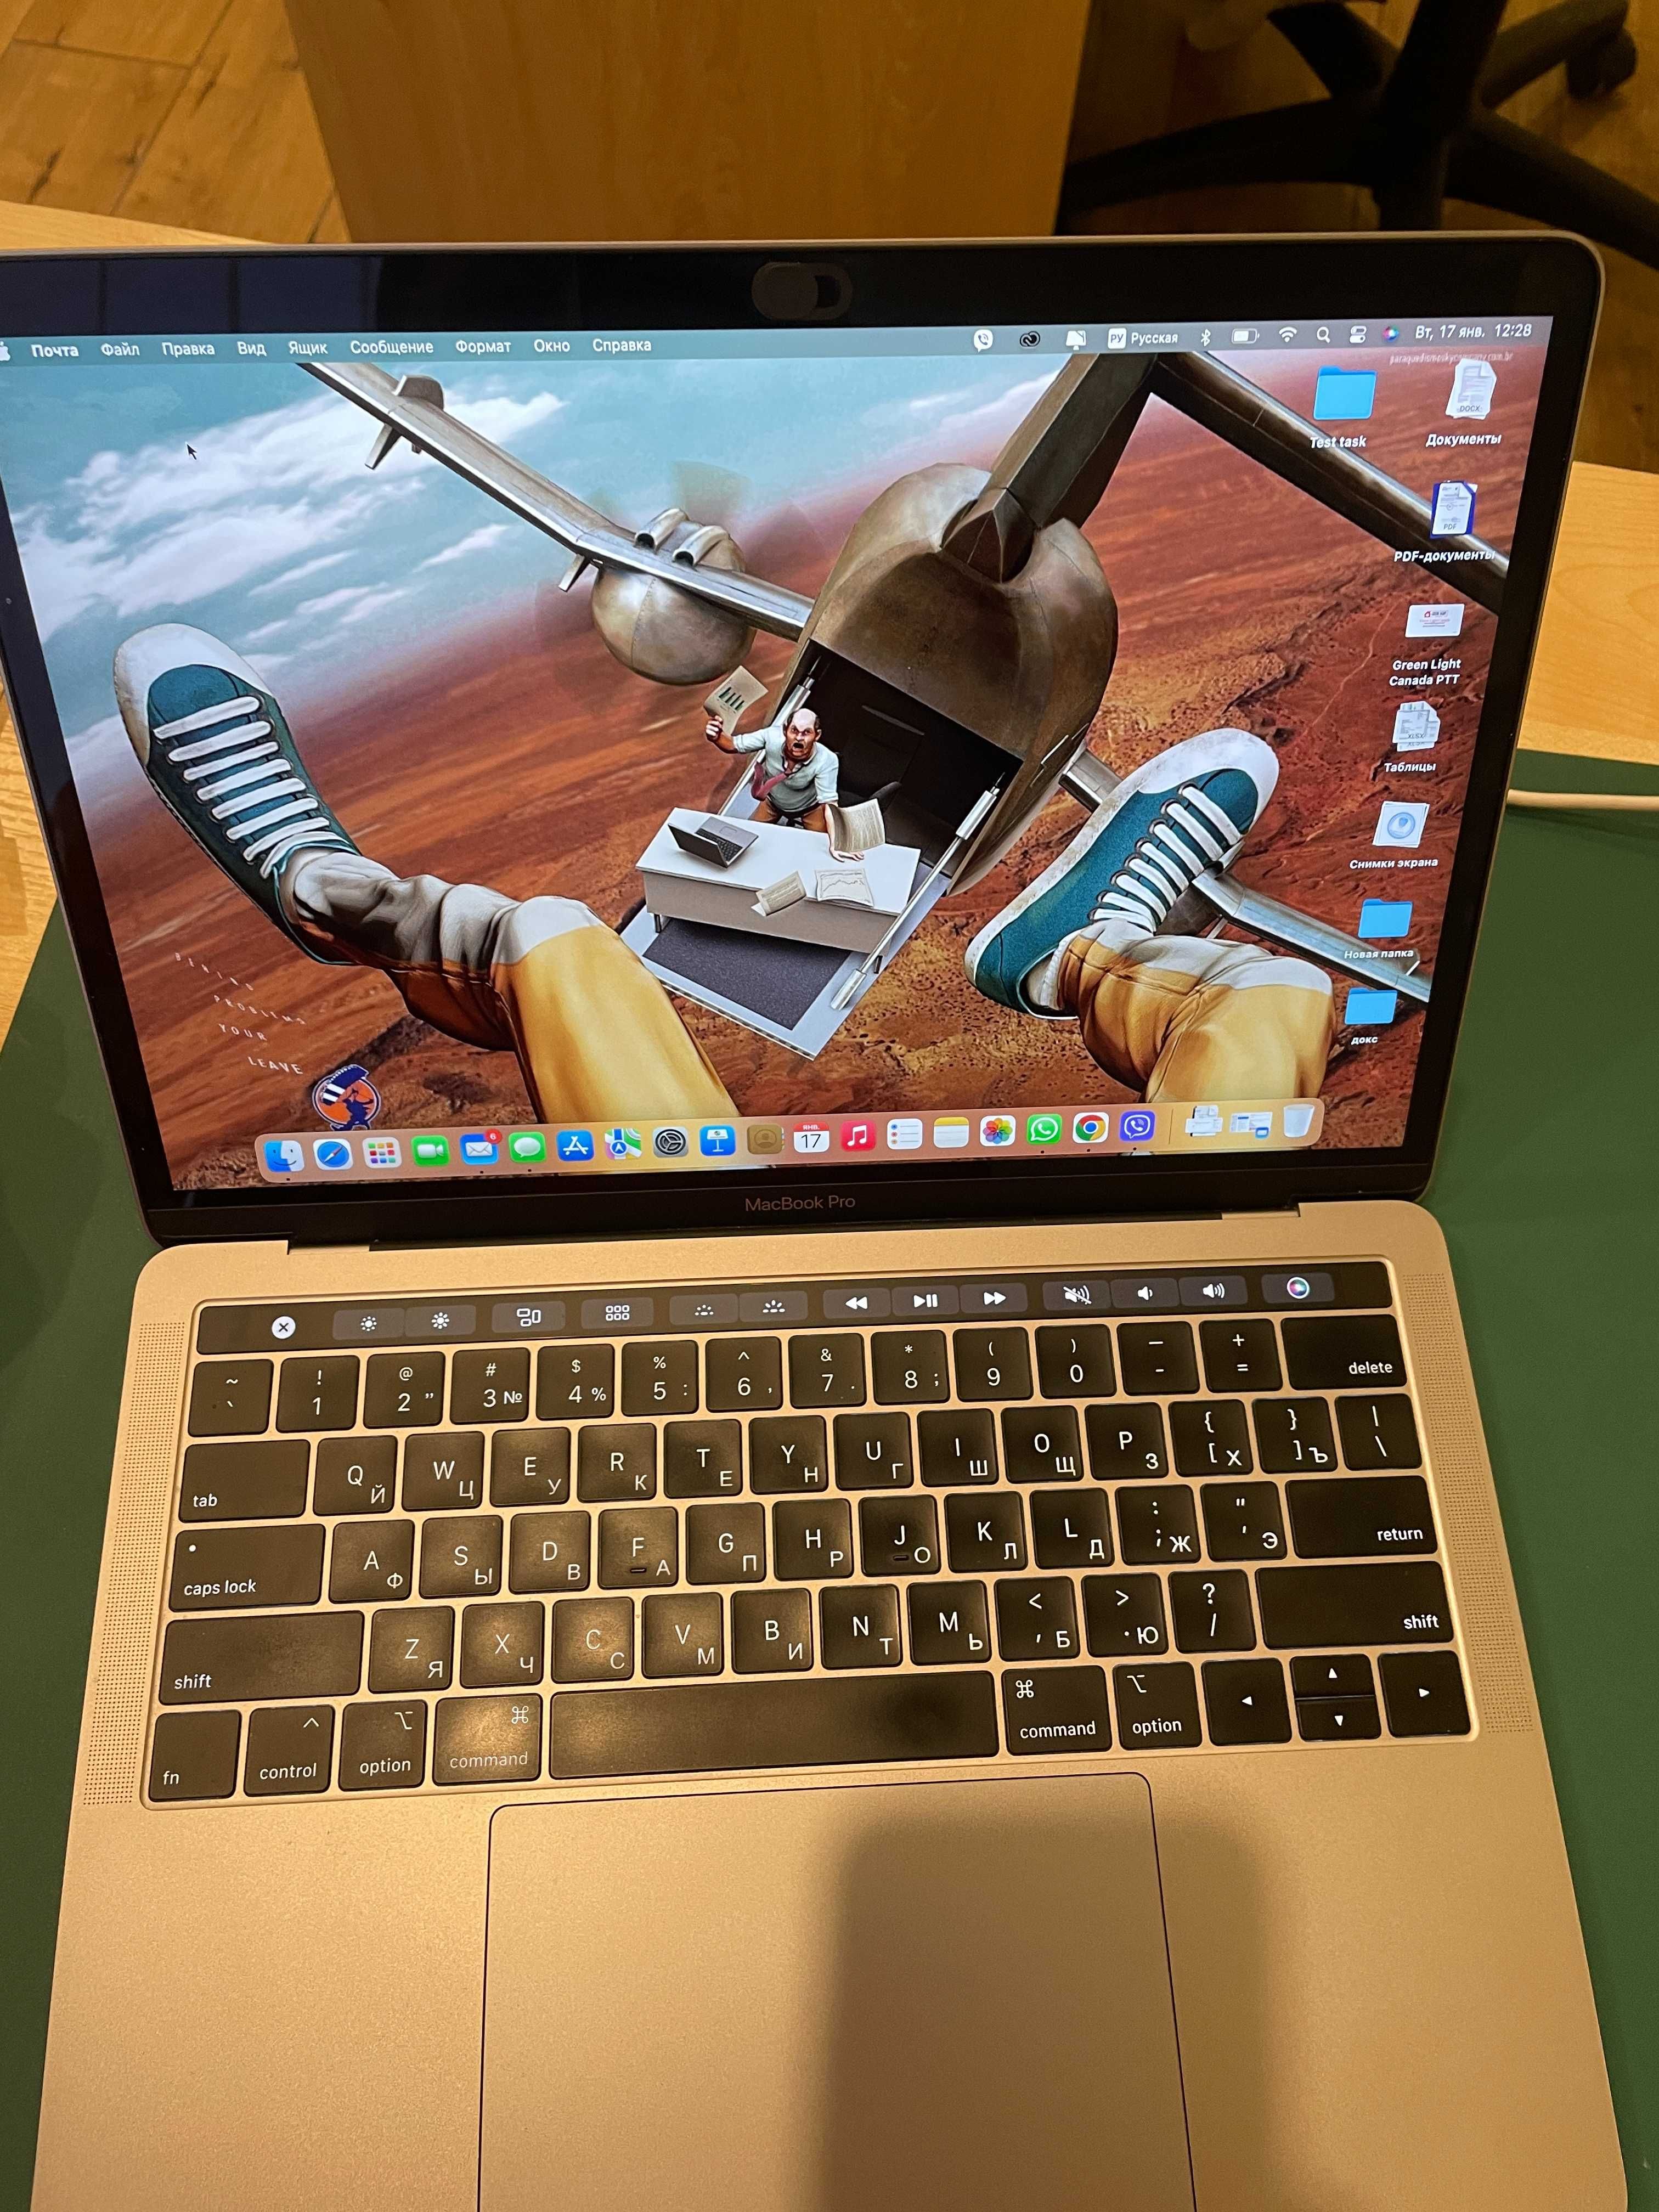 MacBook Pro 13` 2019